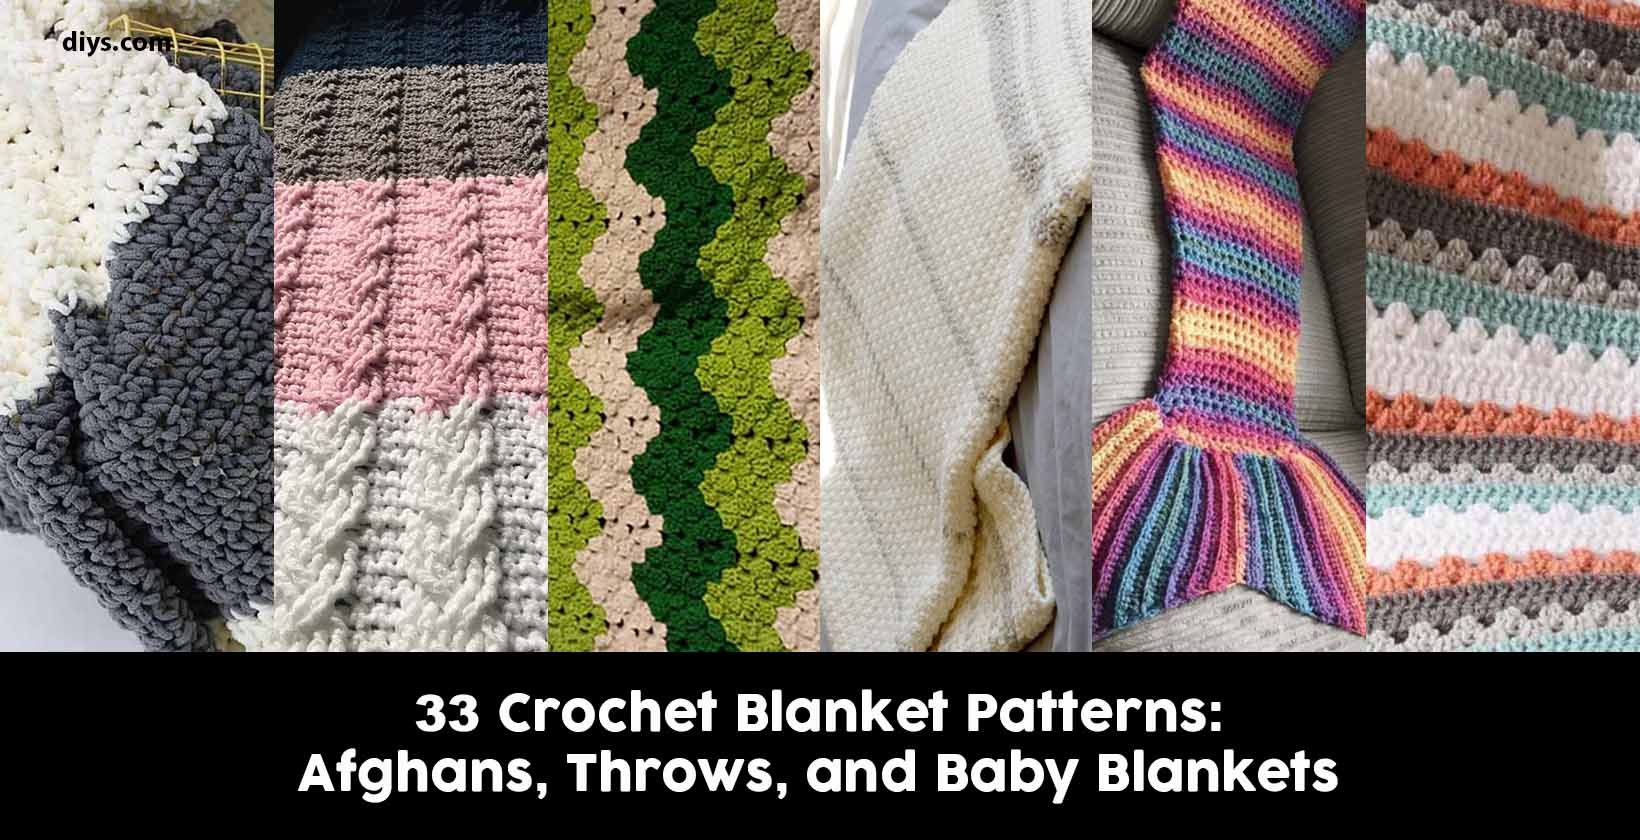 Free crochet blanket patterns